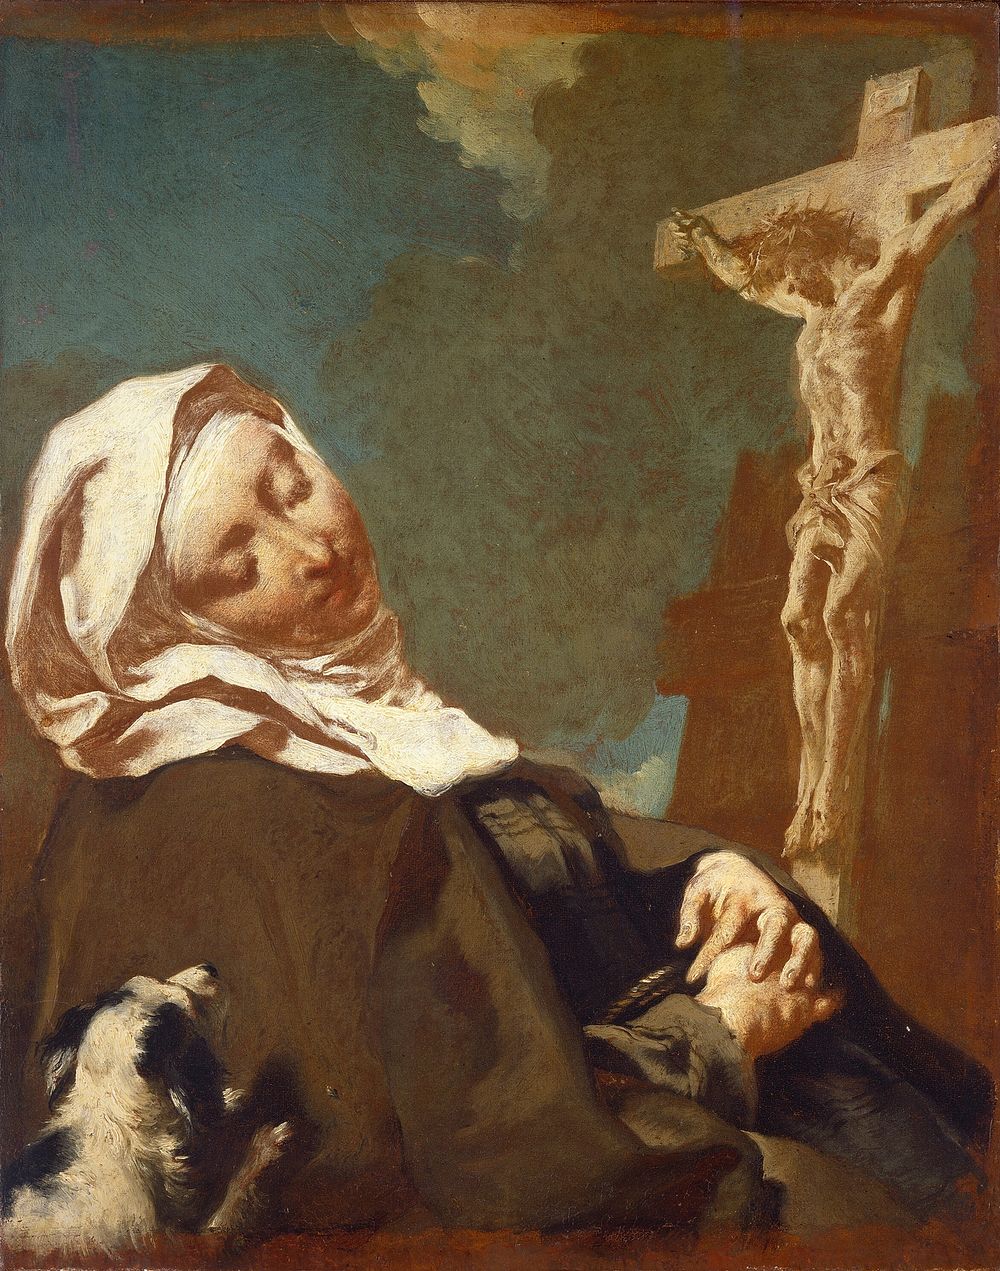 Saint Margaret of Cortona (1737) by Giovanni Battista Piazzetta.  